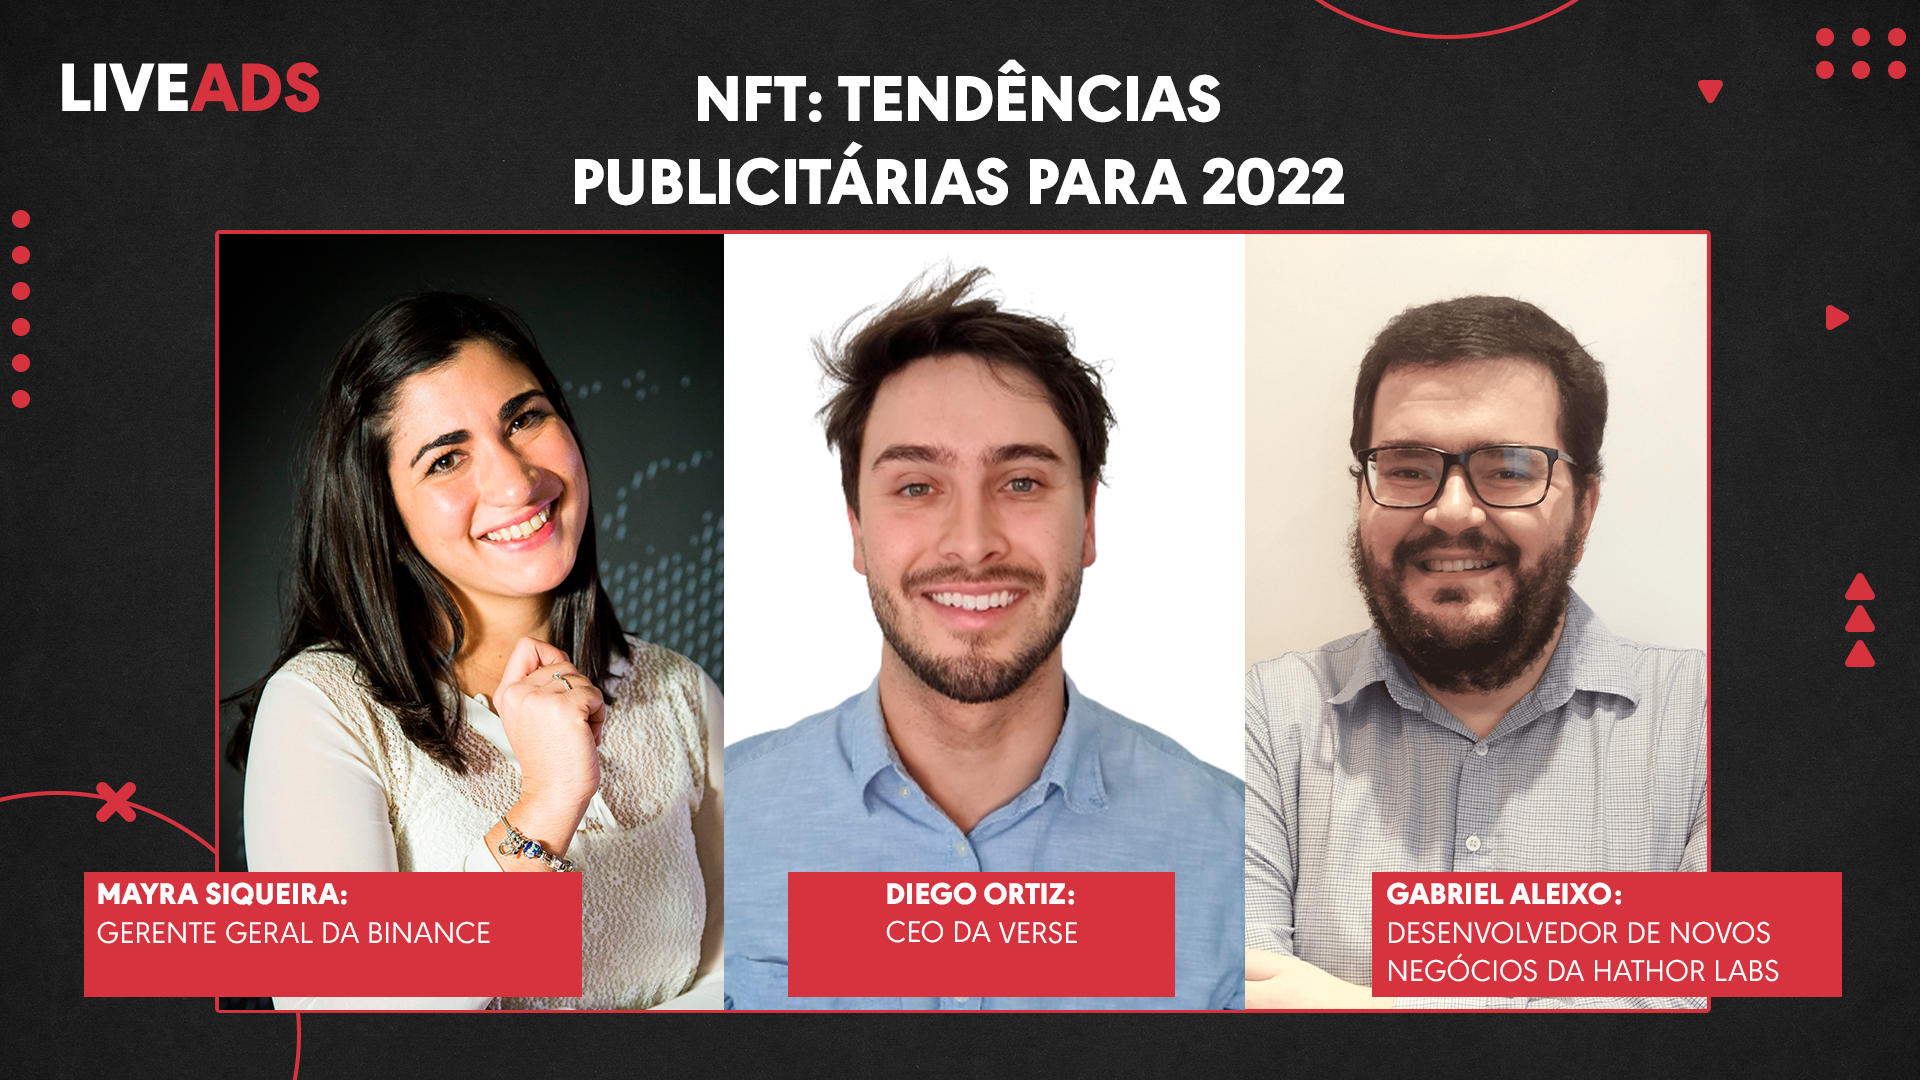 NFT: Tendências Publicitárias para 2022 | LIVEADS